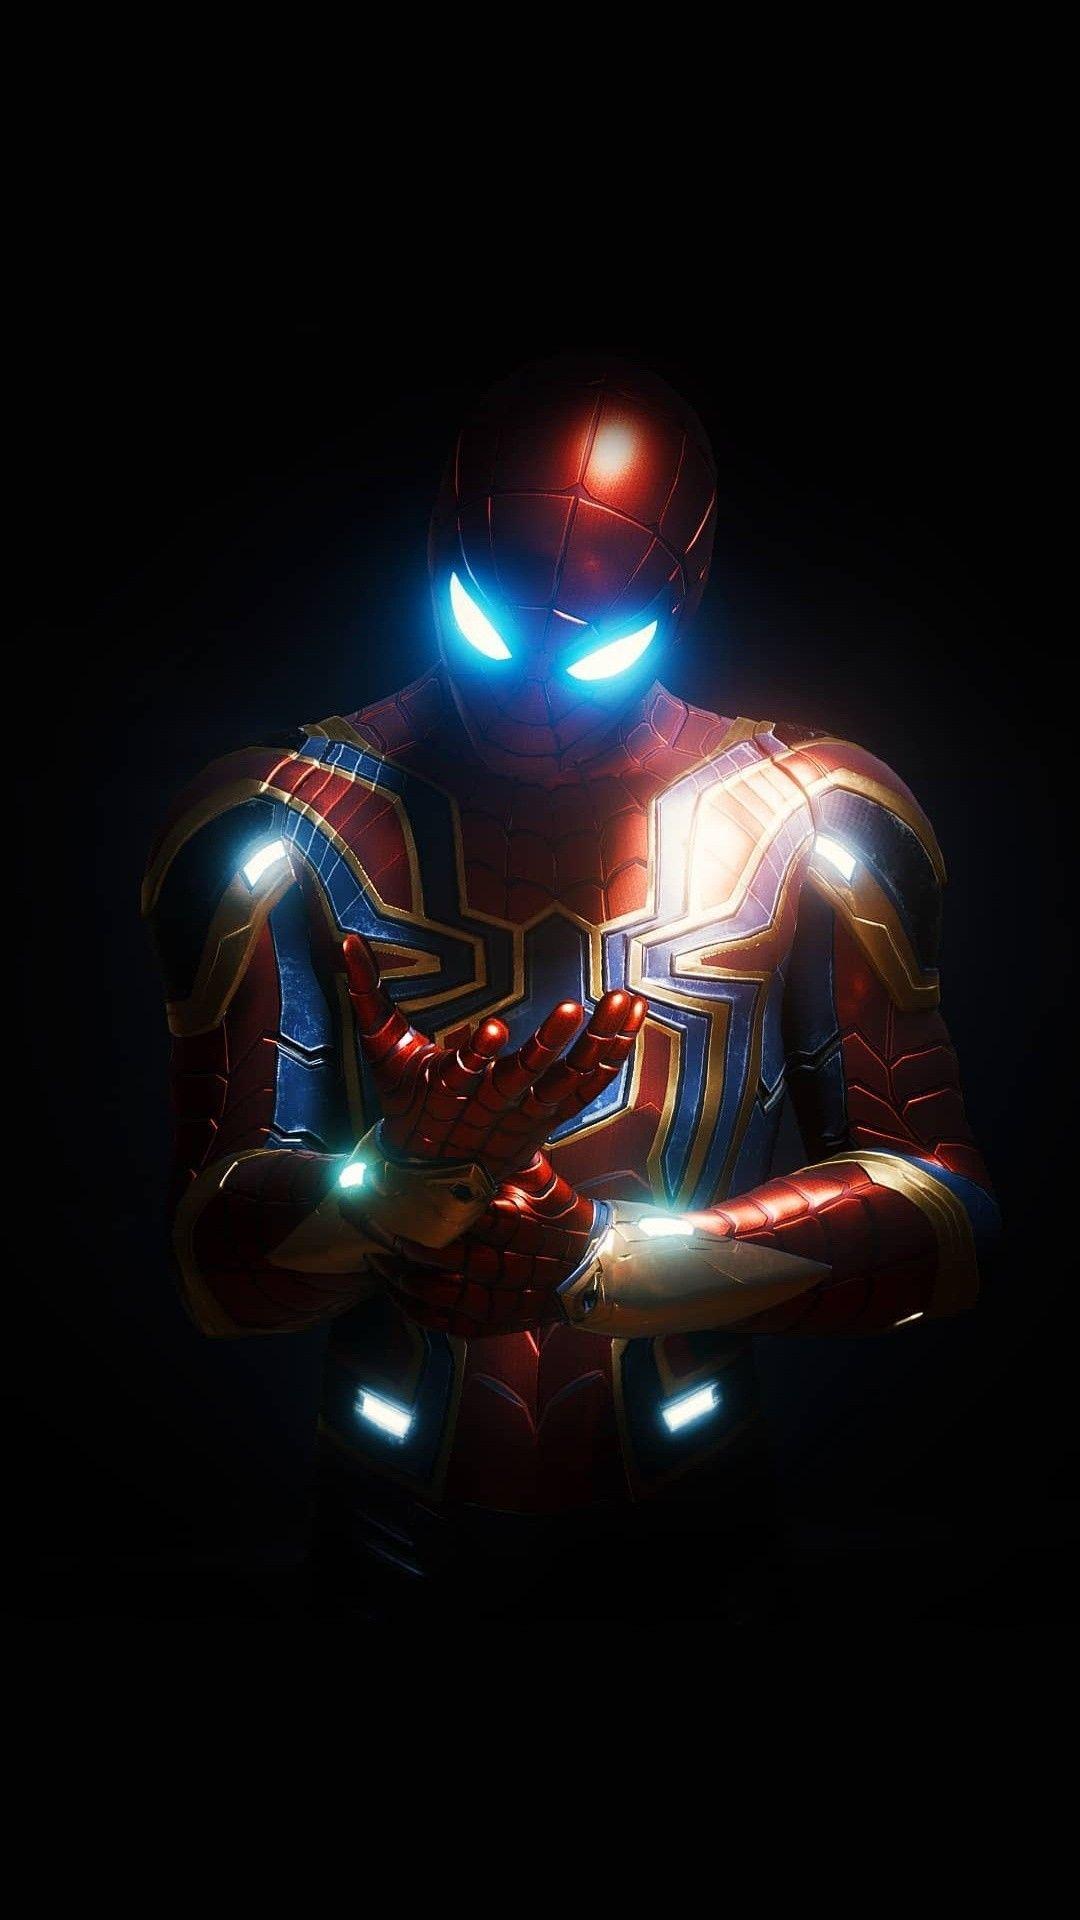 Neon Spiderman by Kirito471 on DeviantArt